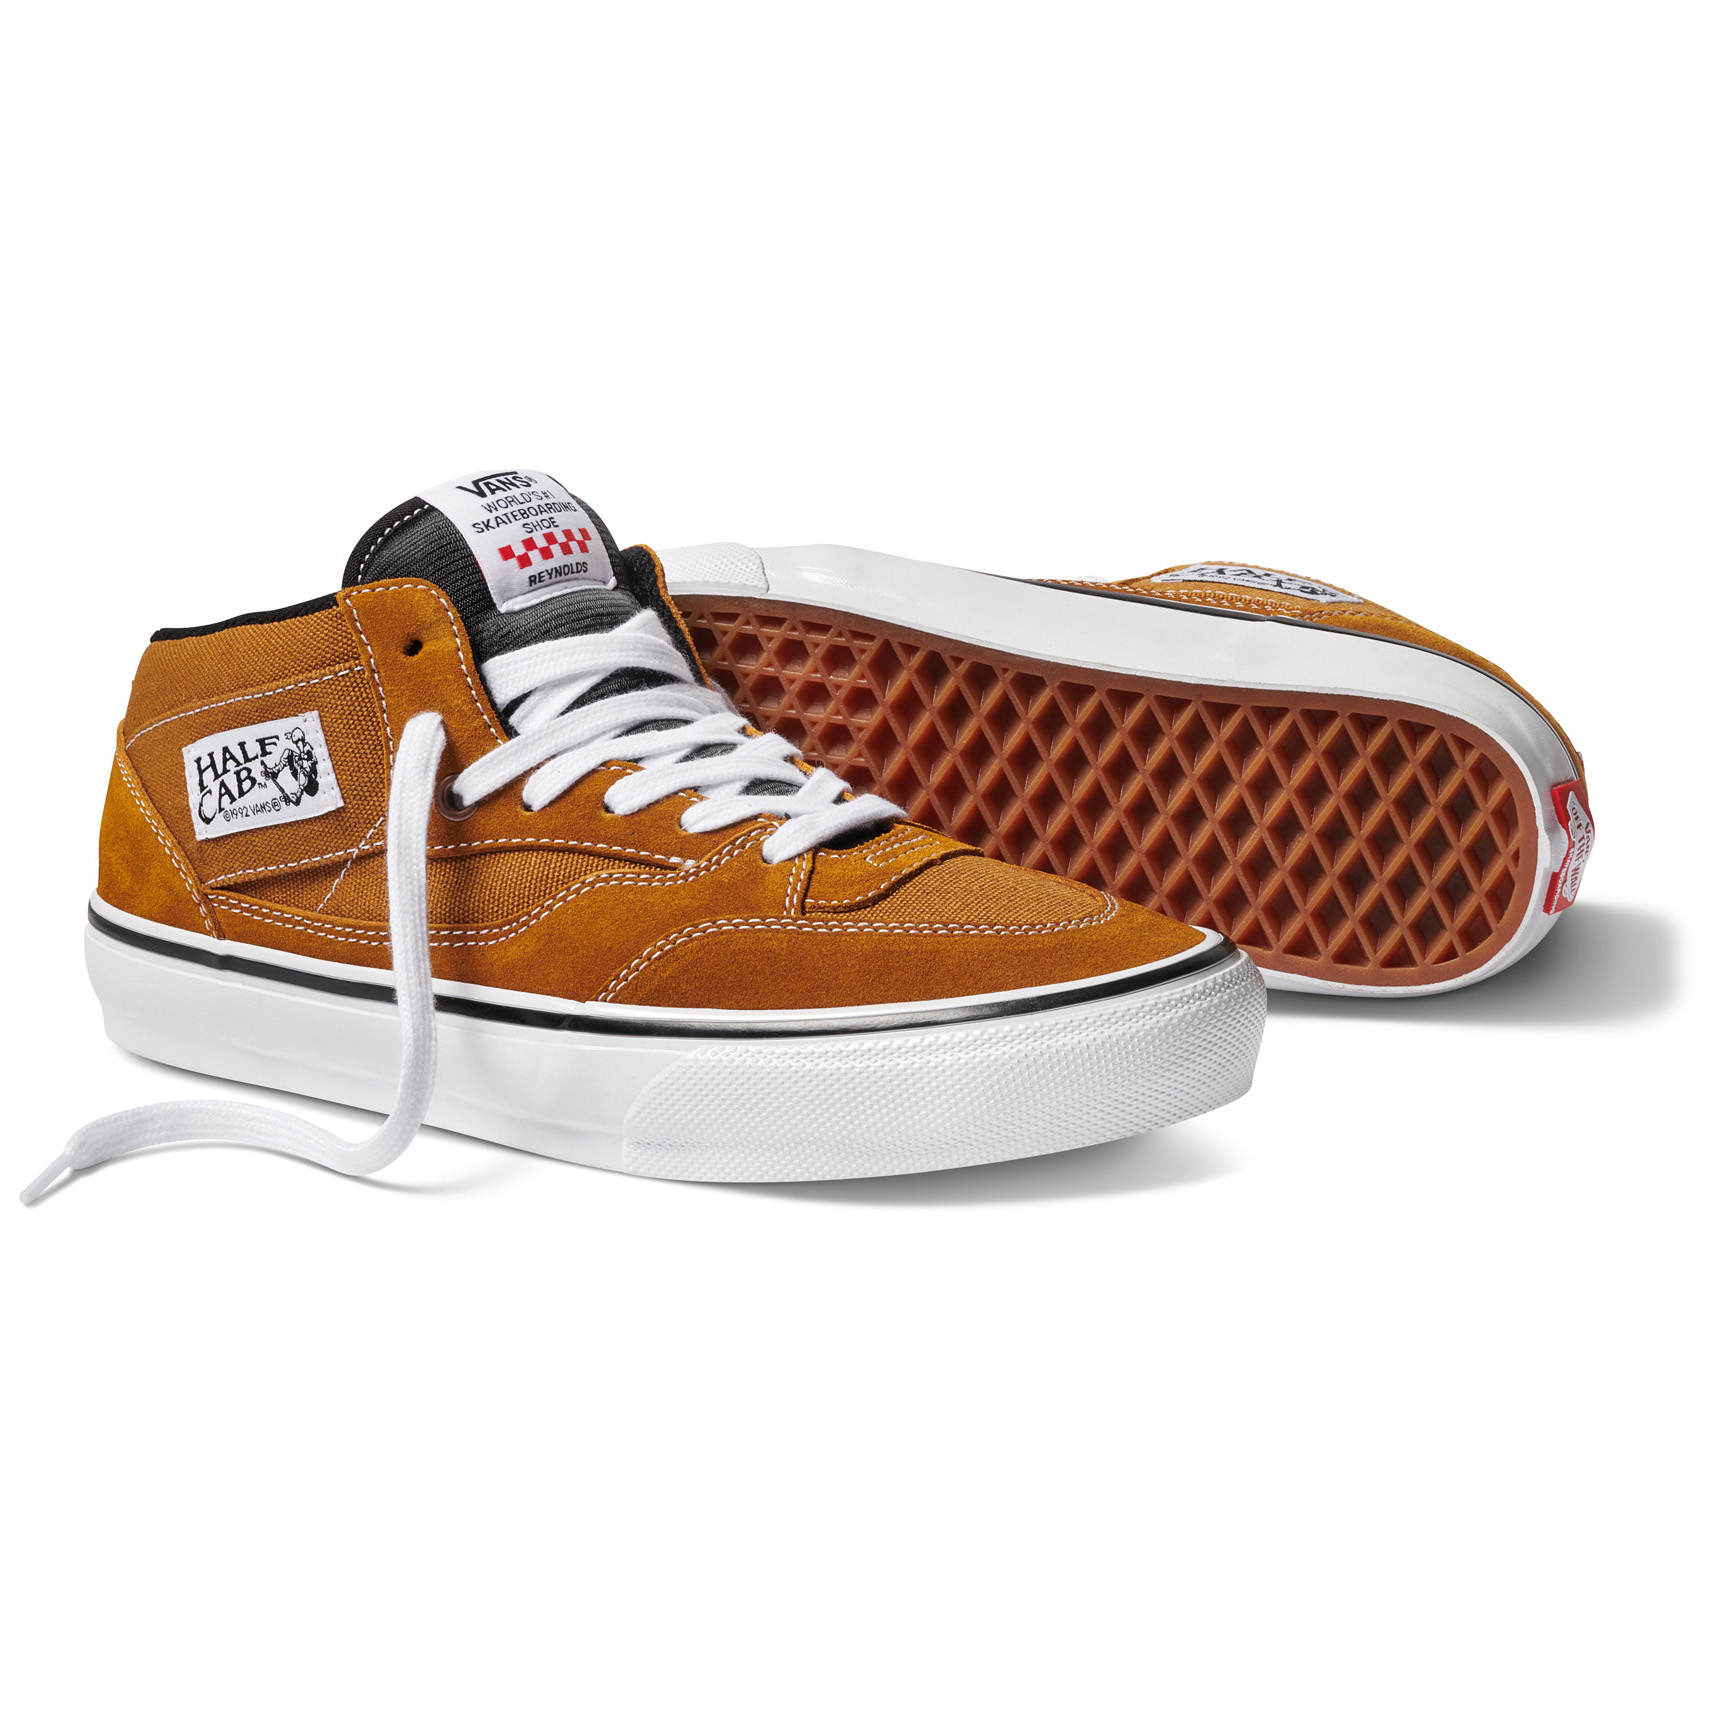 Vans Reynolds Half Cab 92' Shoes - Golden Brown | Precinct Skate Shop